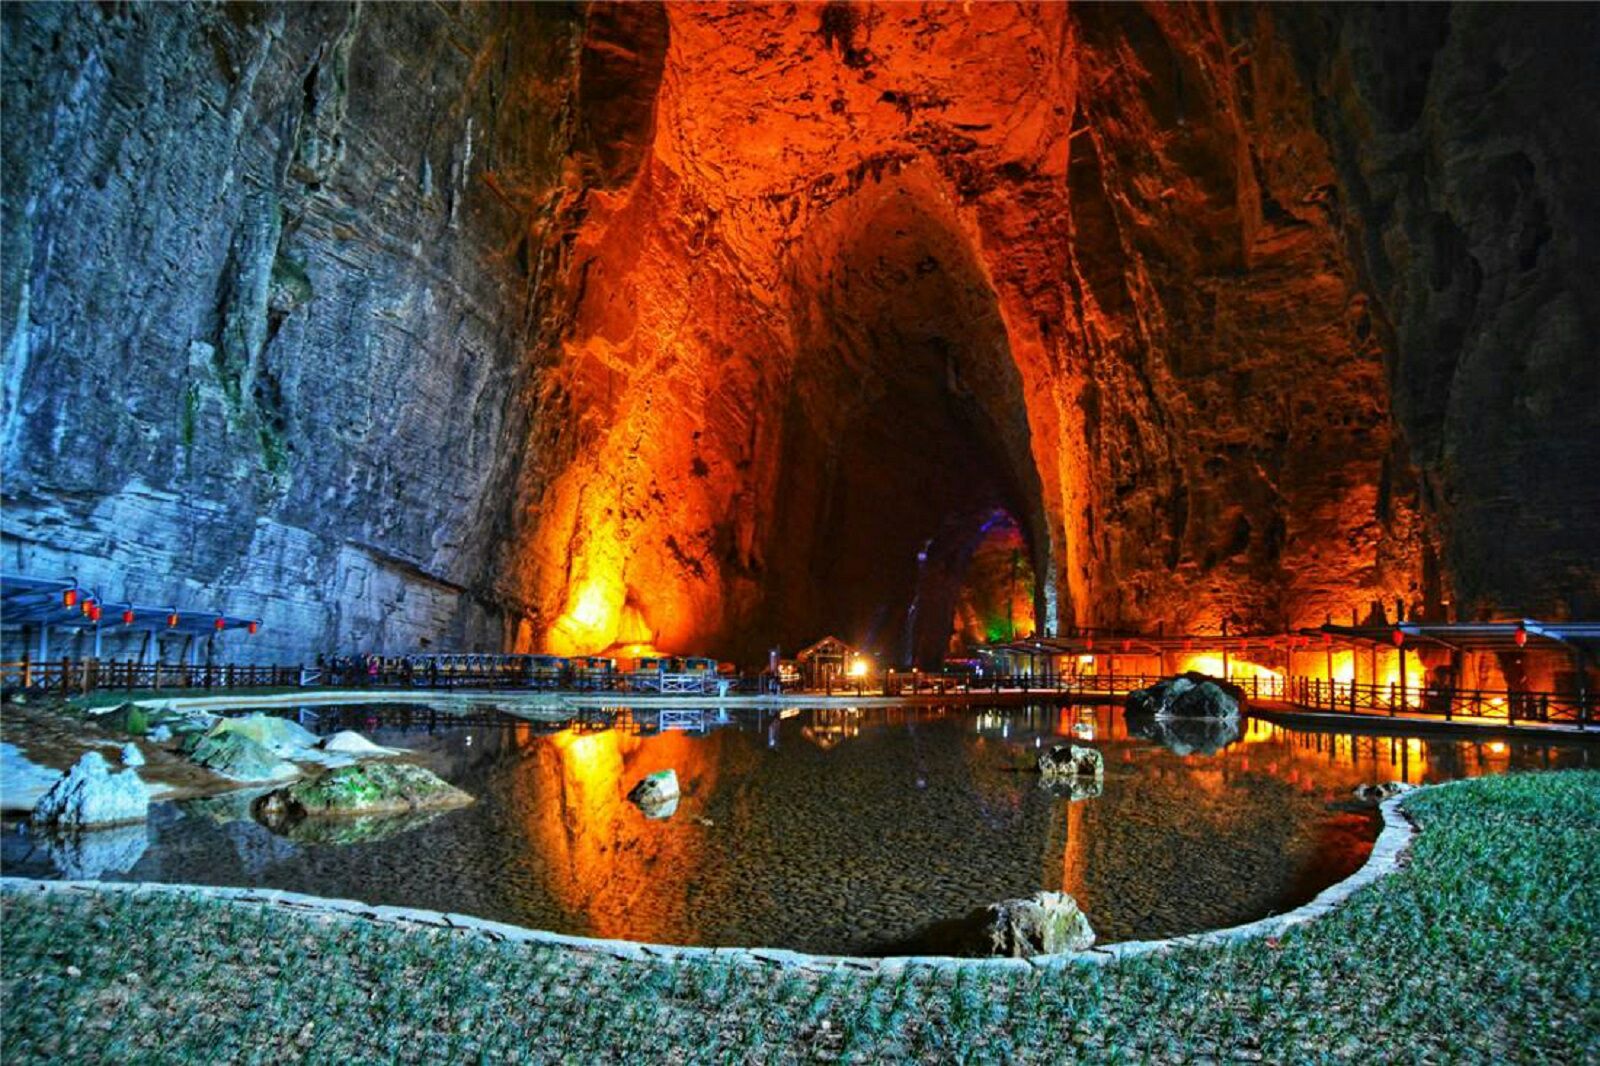 【携程攻略】利川腾龙洞风景区景点,腾龙洞是中国目前最大的溶洞,世界